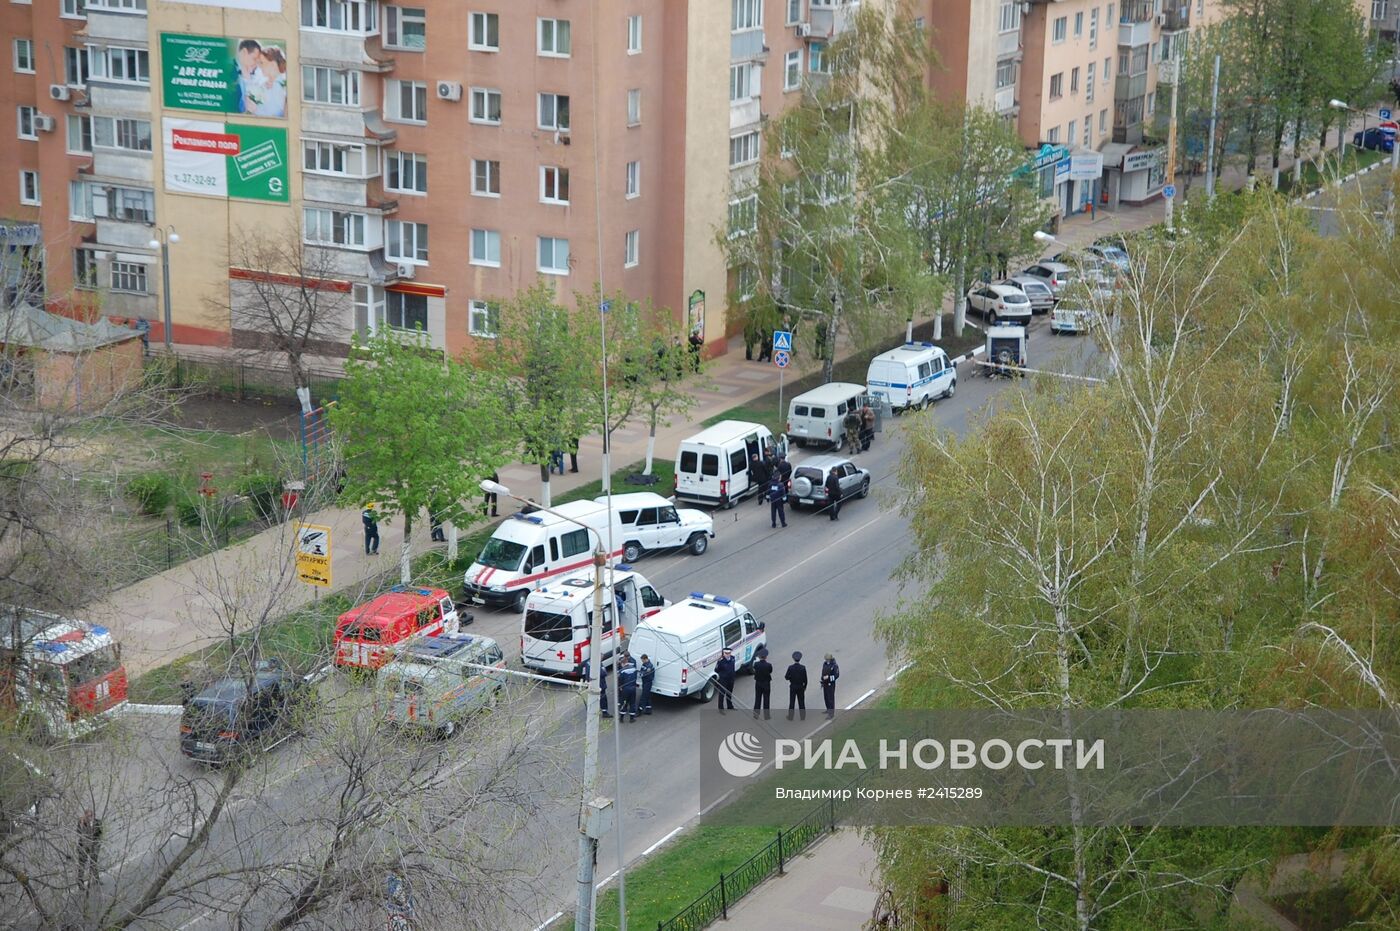 Захват заложников в белгородском банке "Западный"